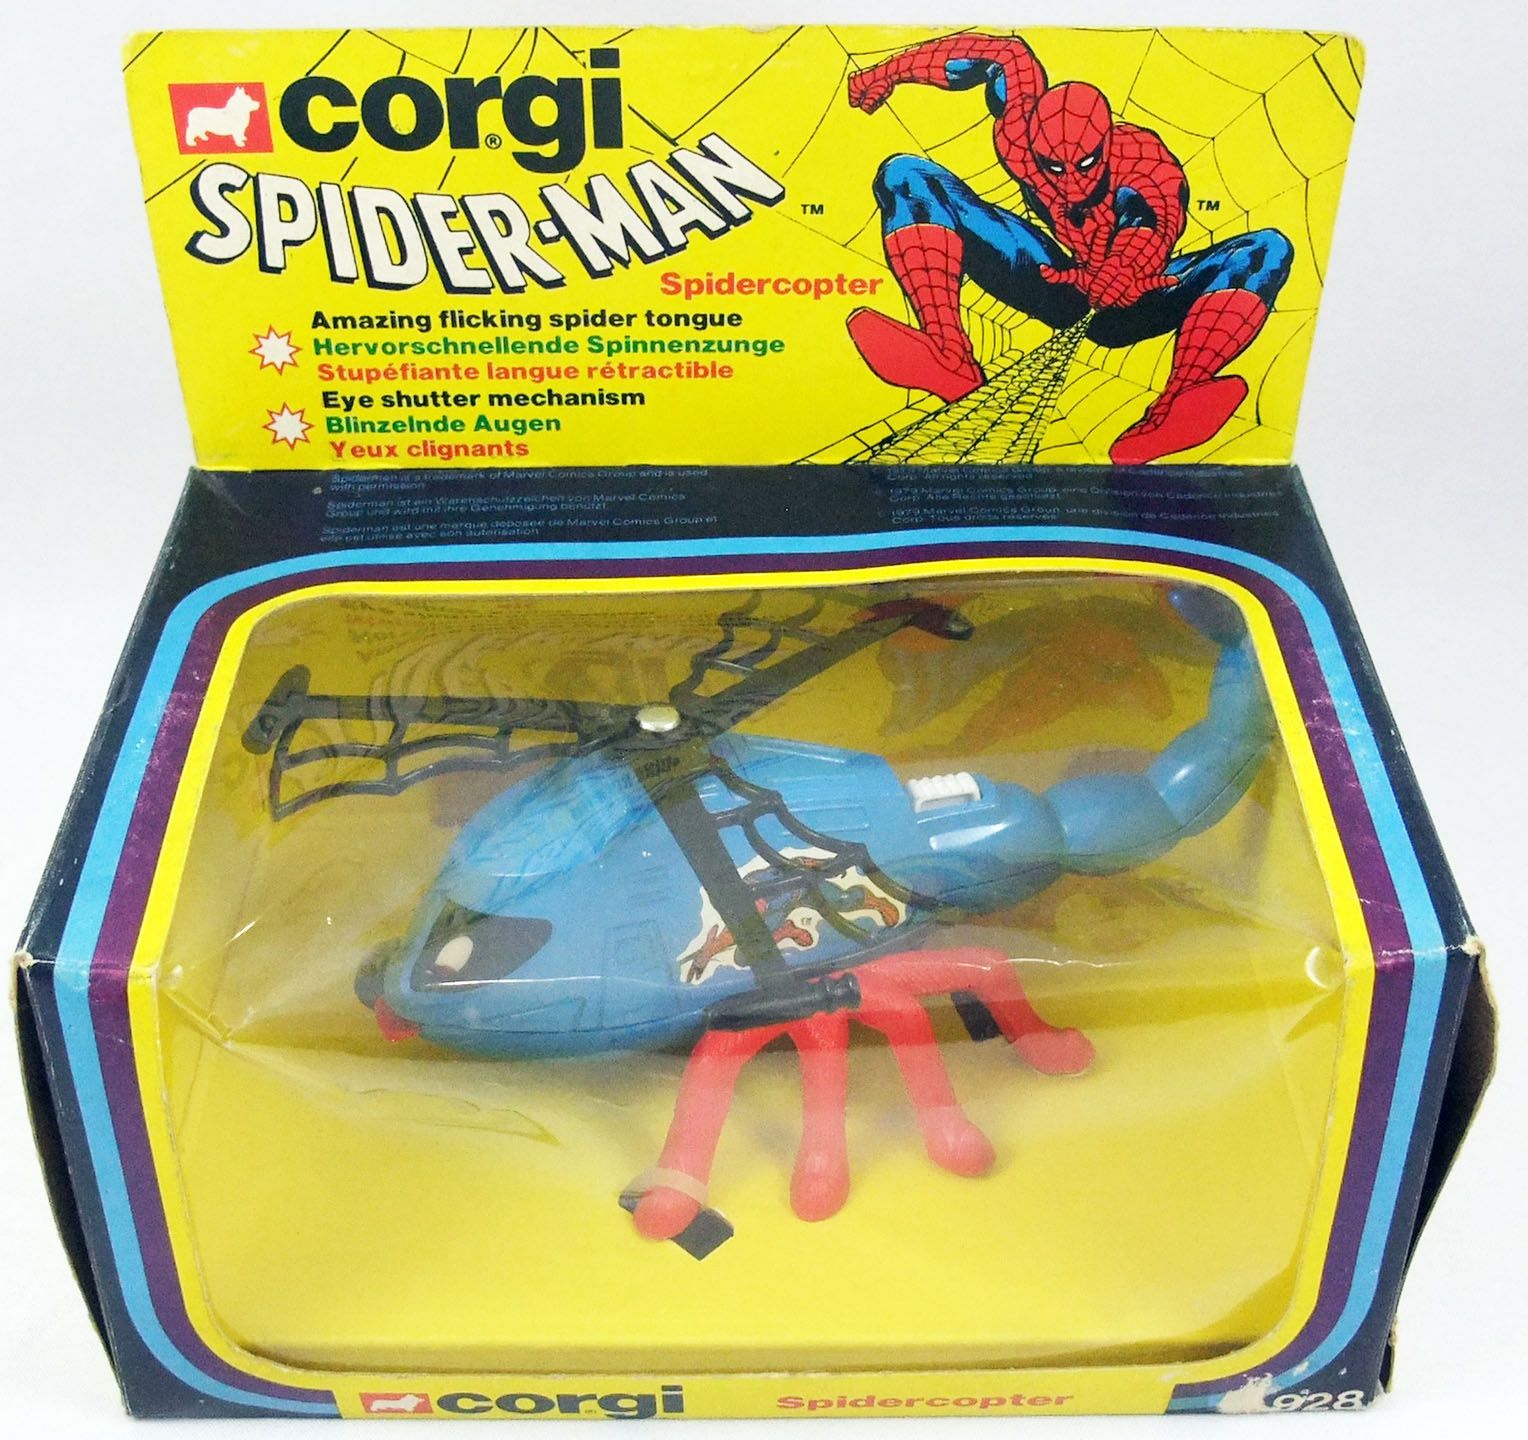 Spider-Man - Corgi Ref. 928 - Spidercopter (mint in box)